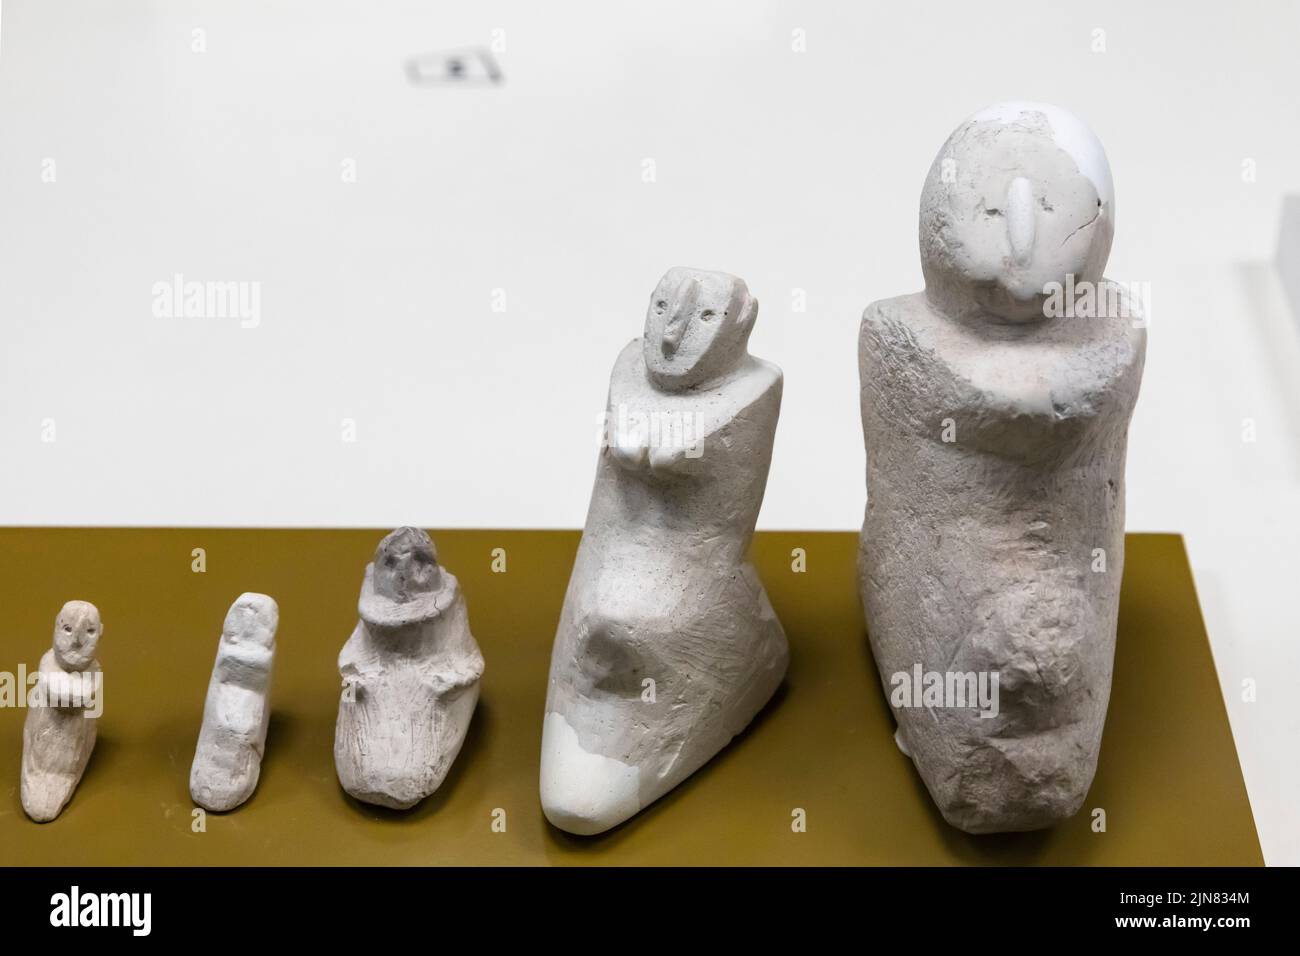 Figurilla humana, Museo Sanlıurfa, neolítico, de Mezra Tellailat, piedra caliza, Sanliurfa (Urfa), Turquía, Asia Menor, Asia Foto de stock